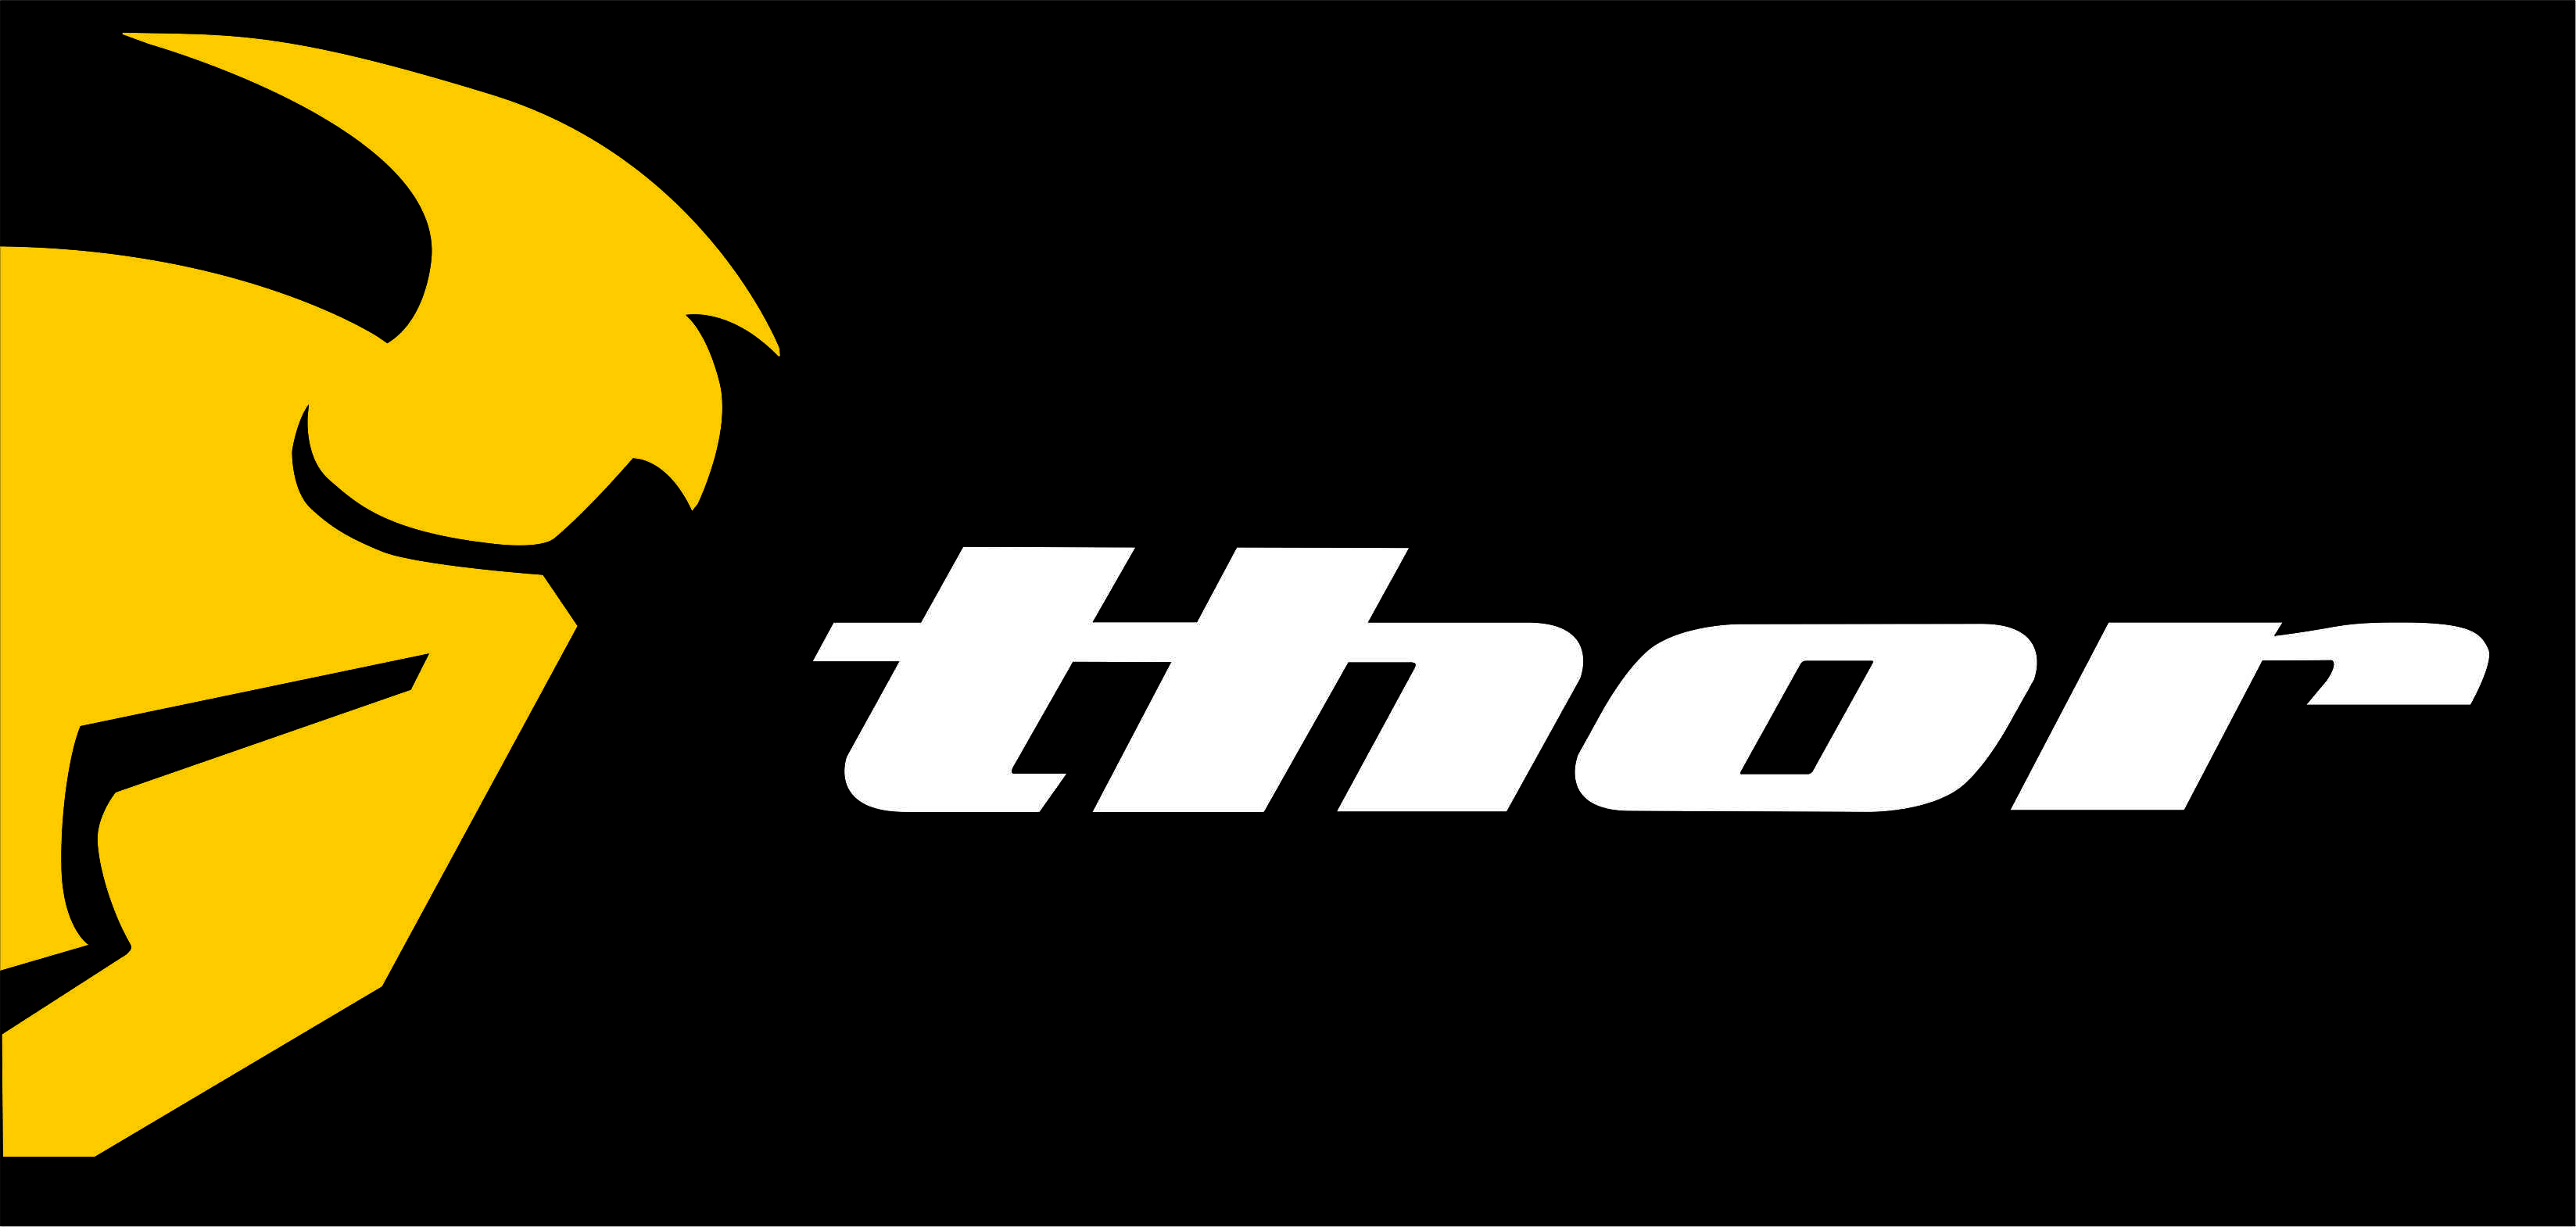 Thor Logos